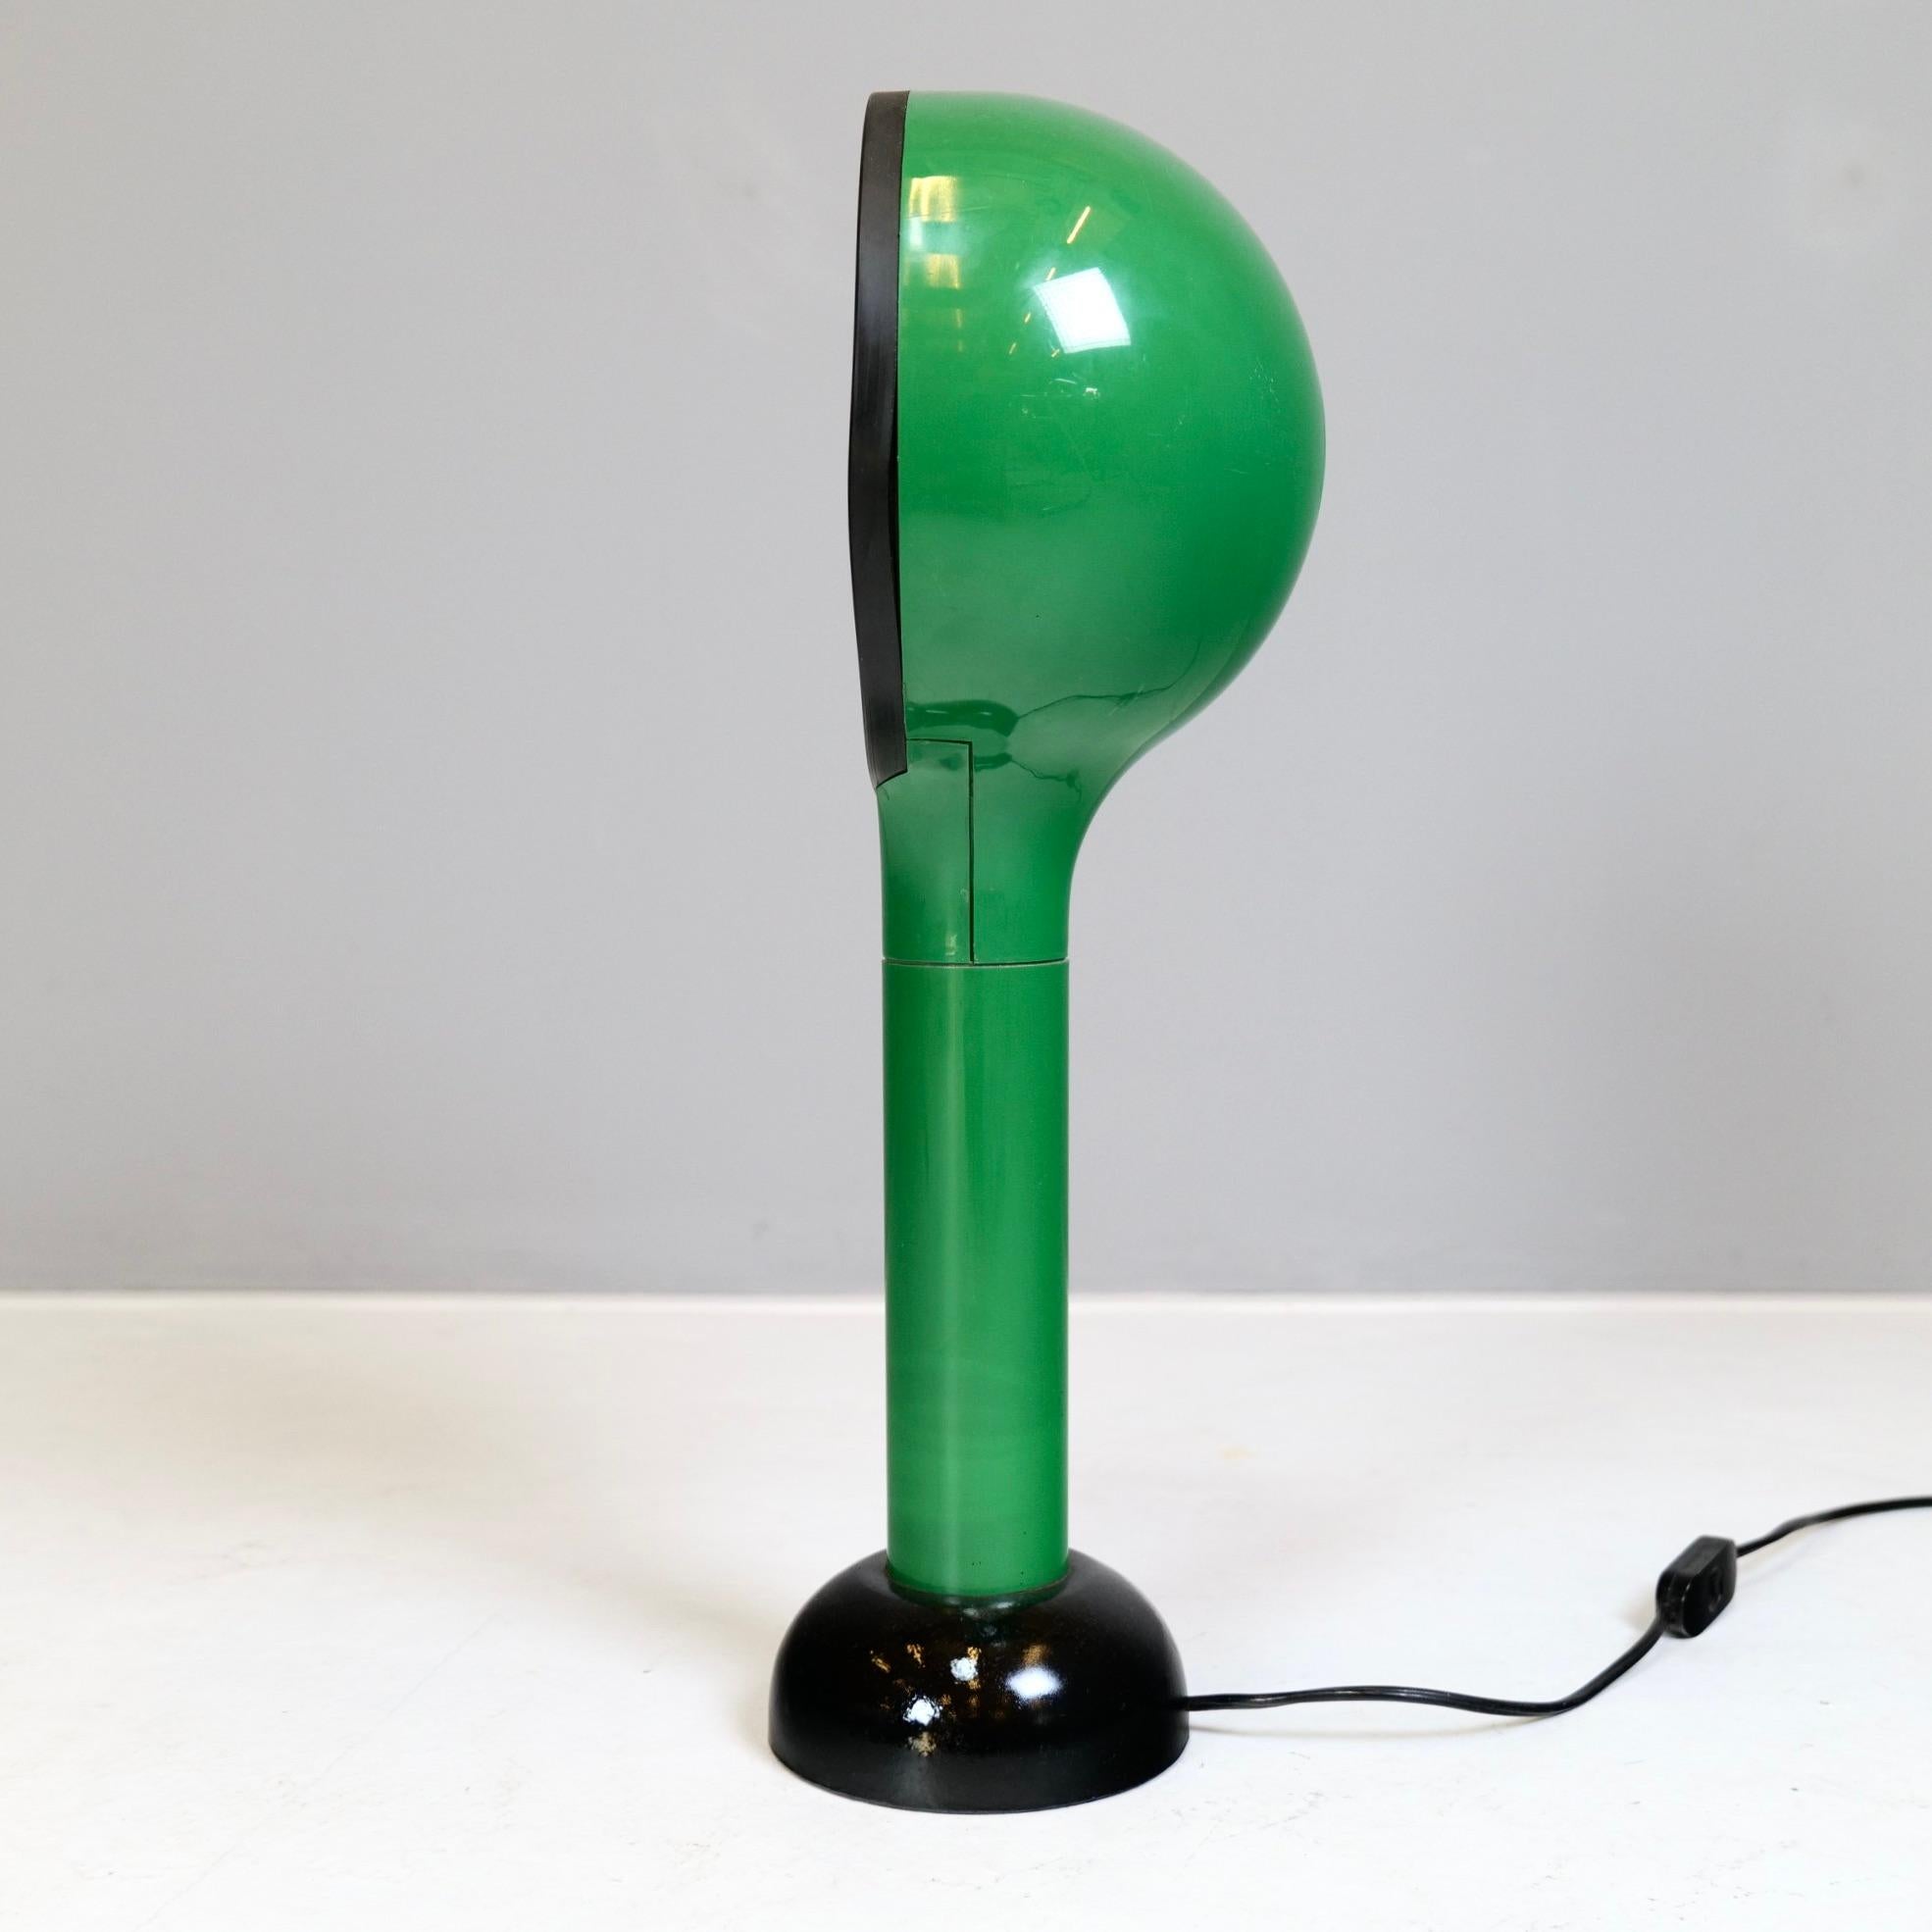 1970er grüne Space Age Schreibtischlampe
Abmessungen:
52 cm Höhe
22 cm Breite
14 cm Breite
MATERIALIEN:
abs kunststoff, glas
guter Zustand mit leichten Gebrauchsspuren.
Keine Bremsen oder Chips.